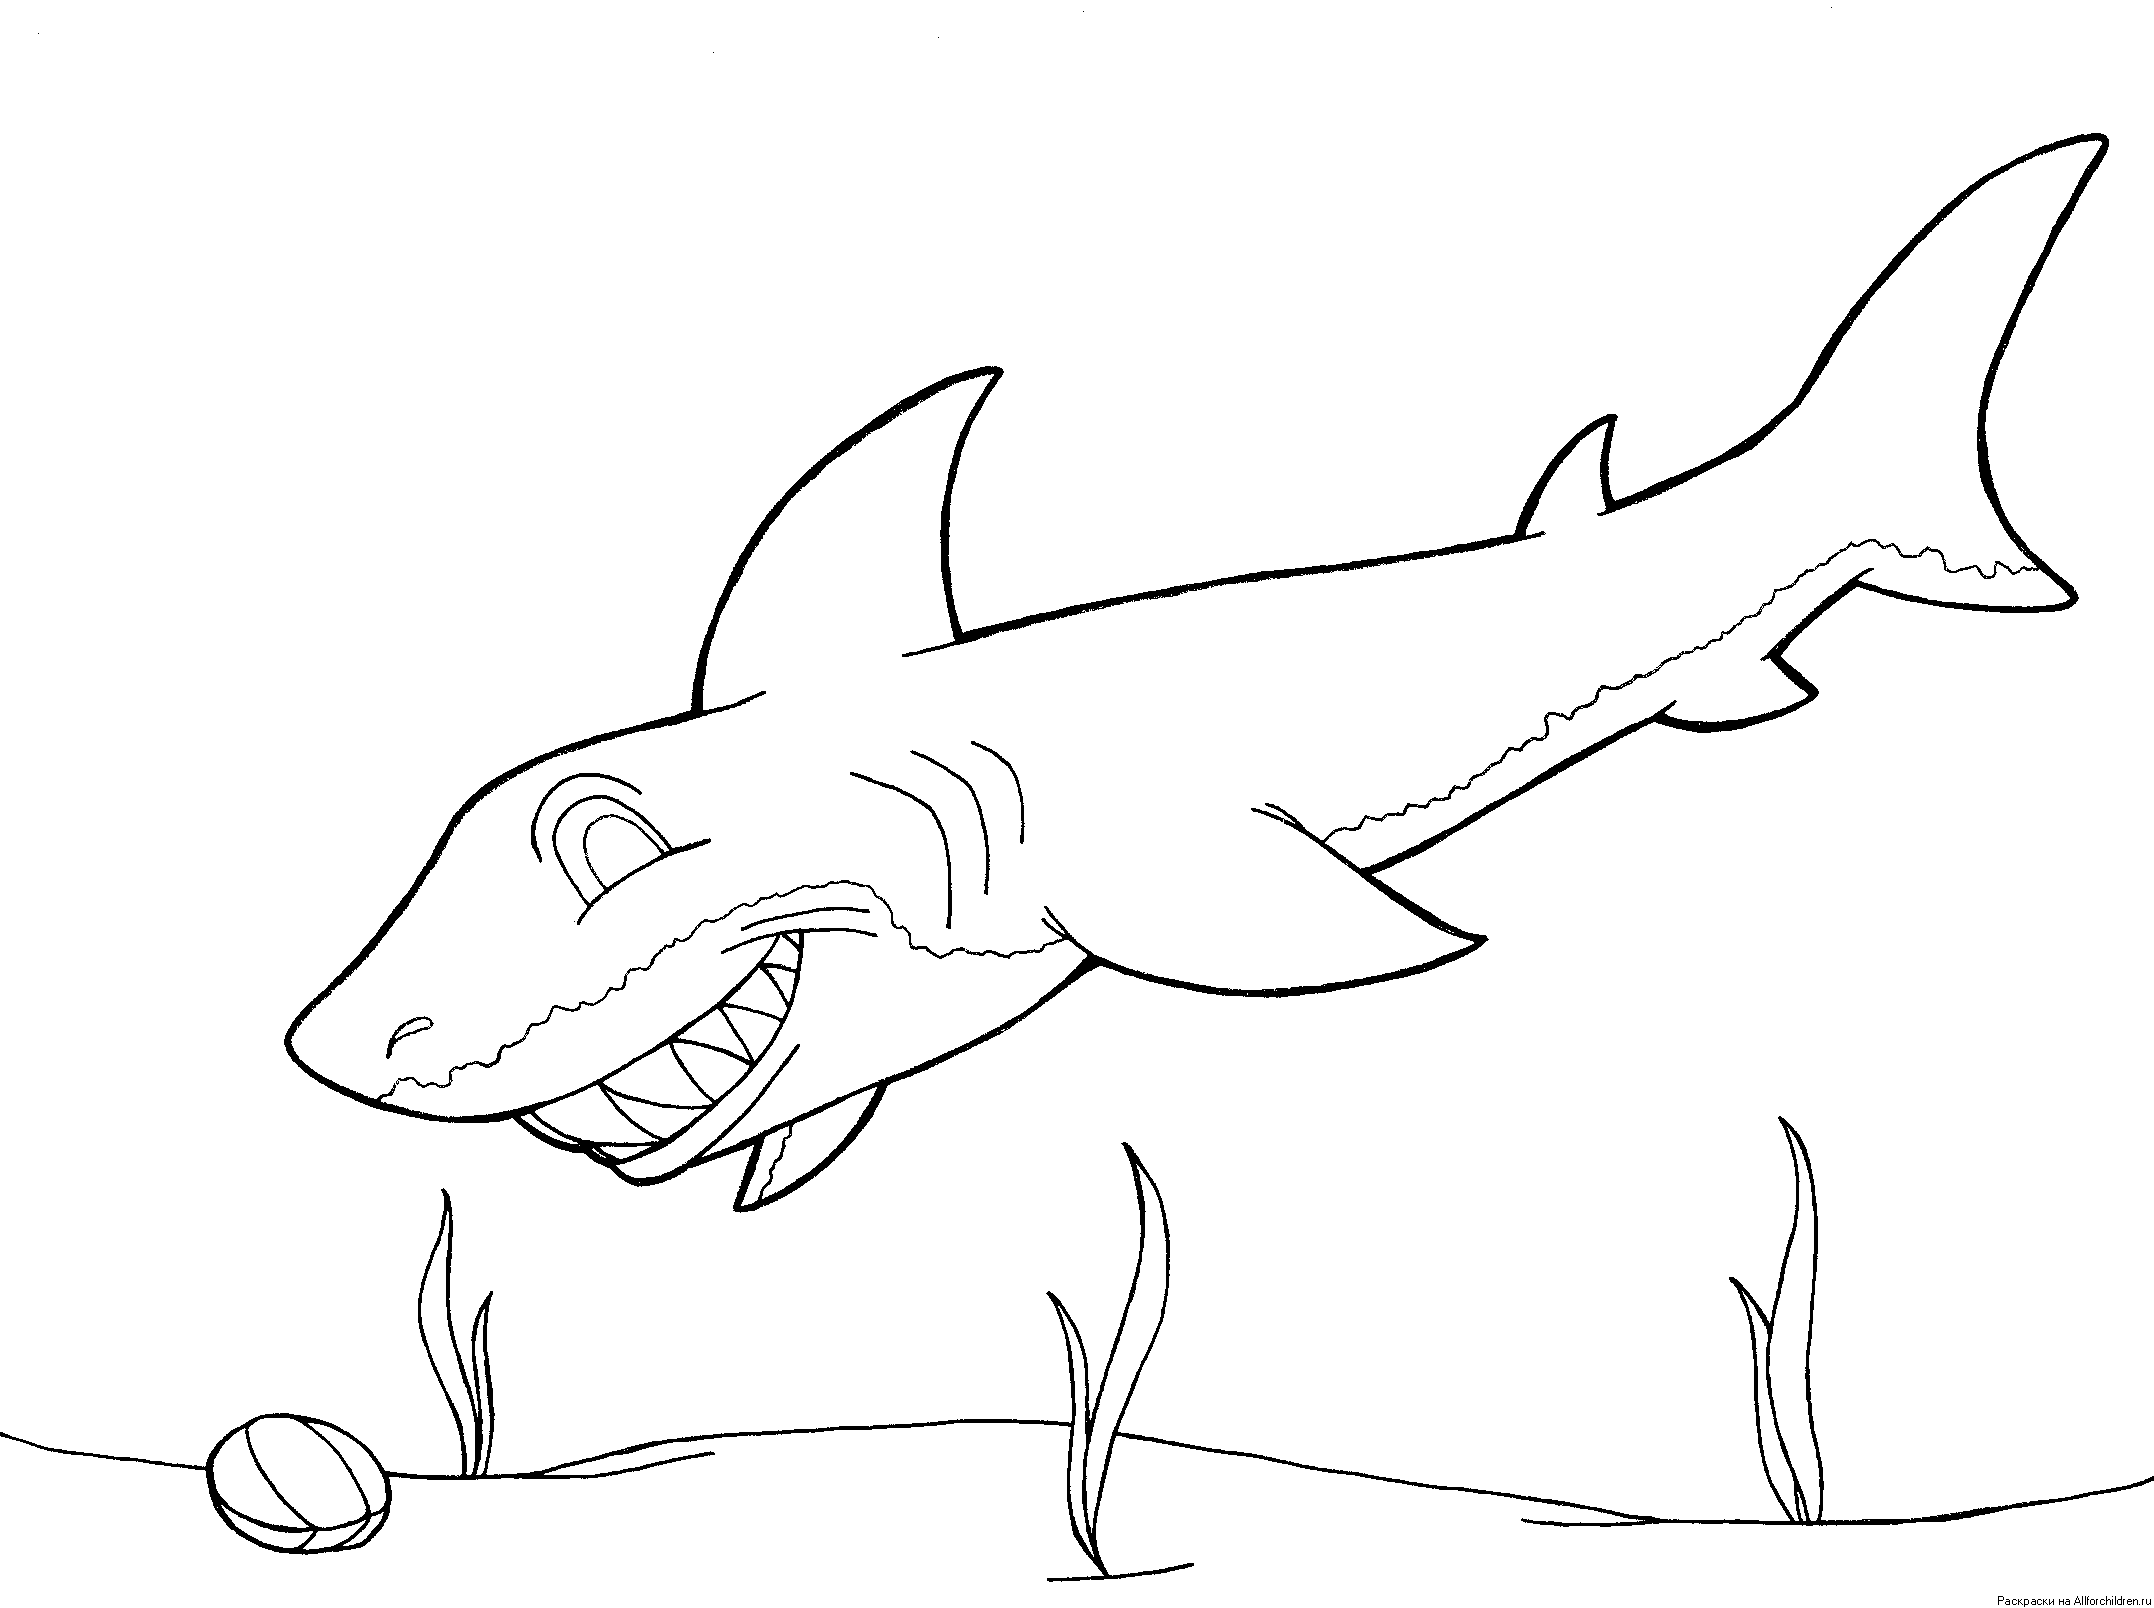 Шаблон акулы